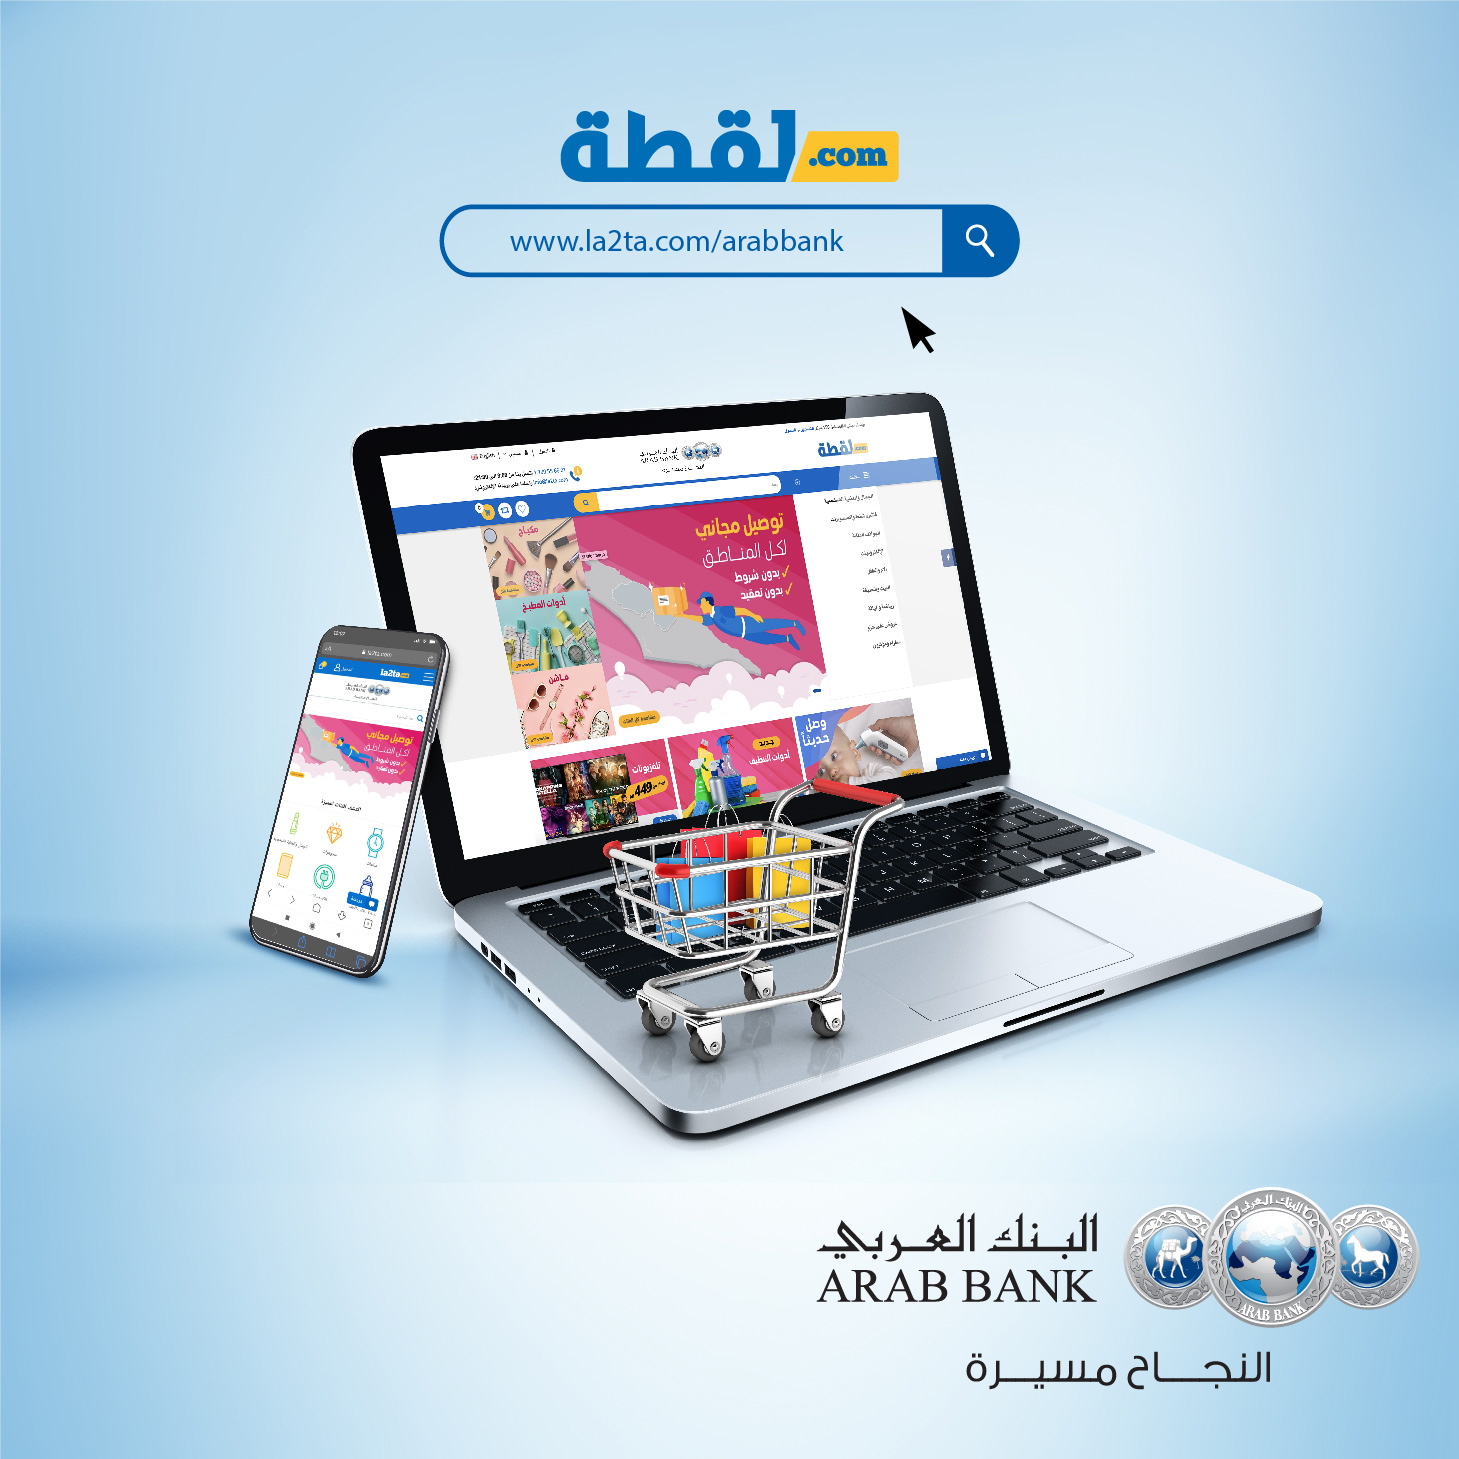 البنك العربي يتيح لمعتمديه استبدال "نقاط العربي" للتسوق لدى موقع لقطة.كوم